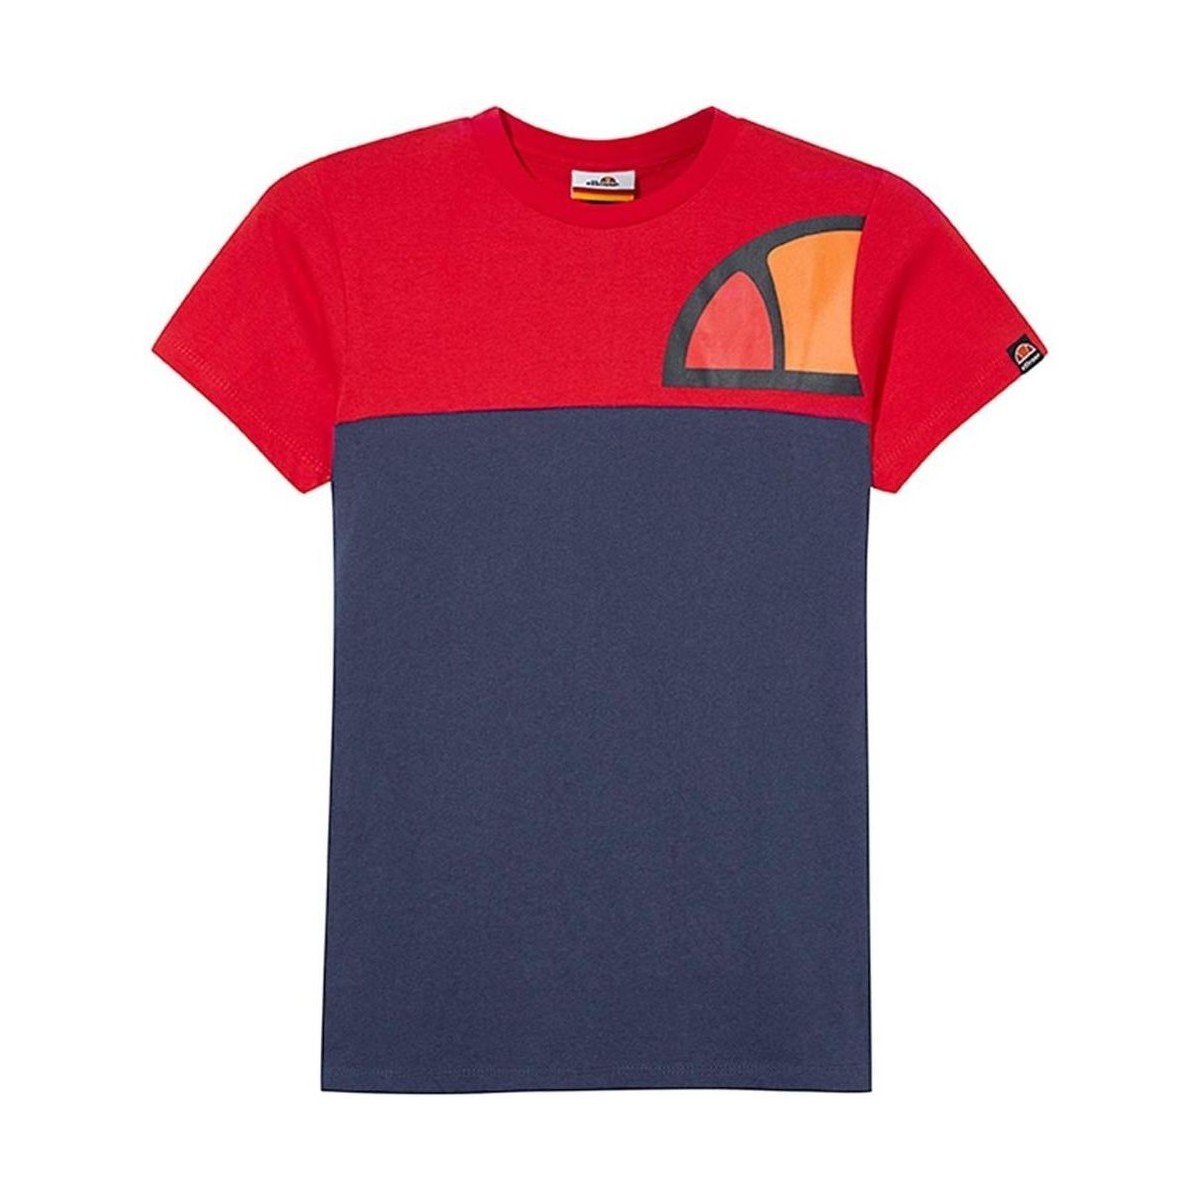 textil Pojkar T-shirts Ellesse  Röd